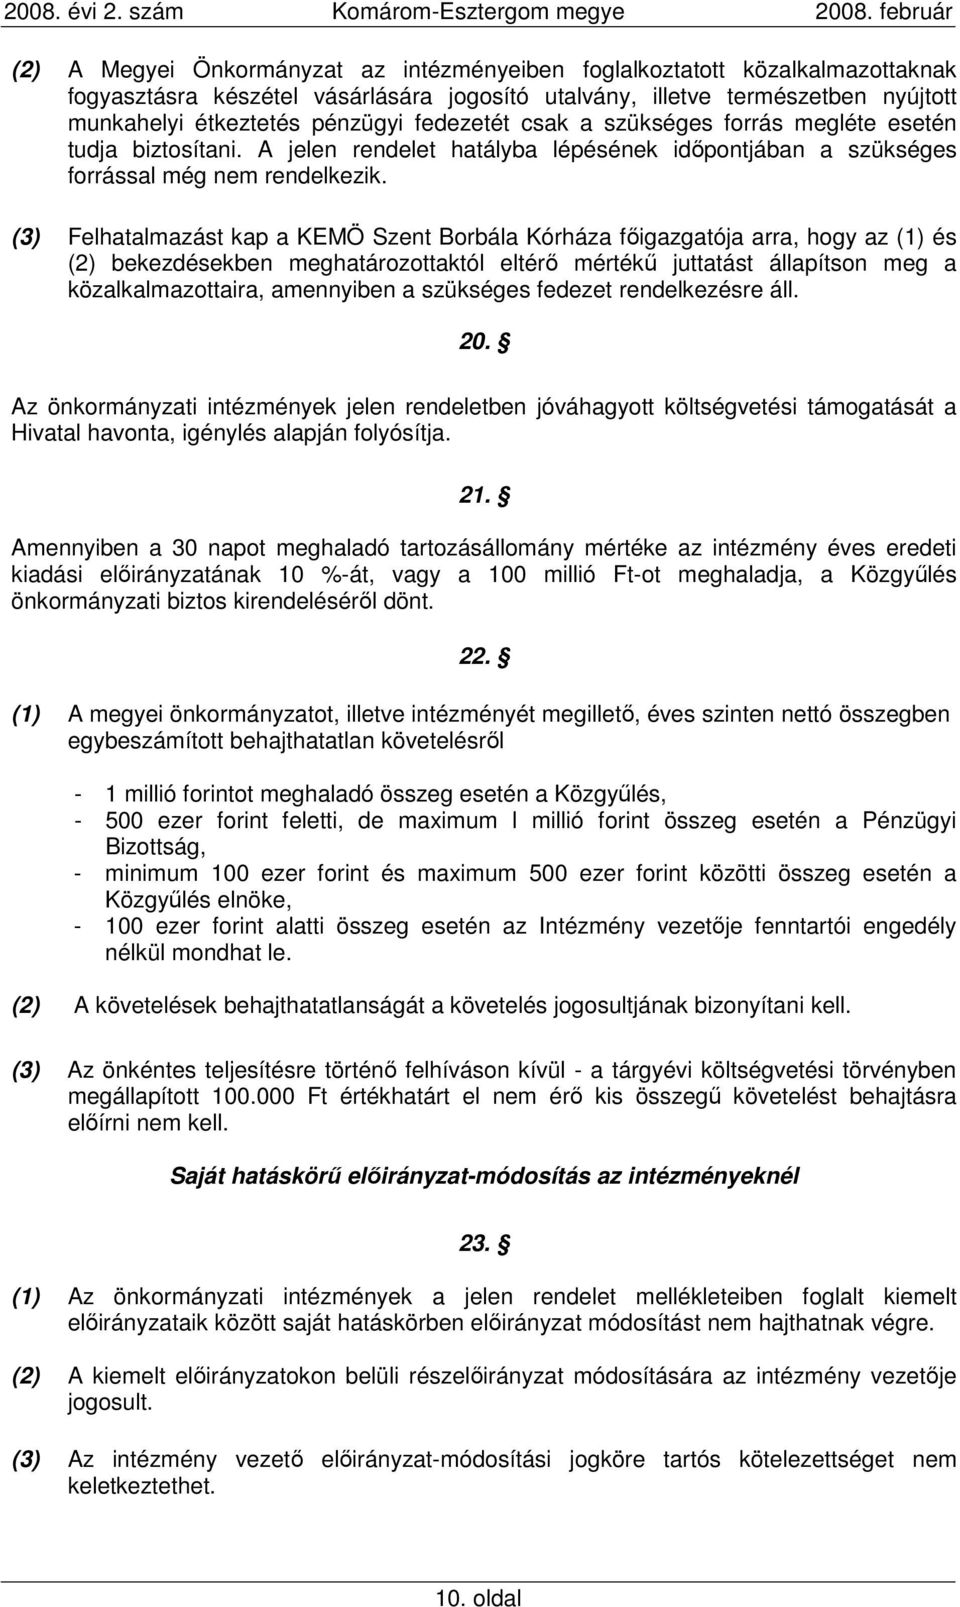 (3) Felhatalmazást kap a KEMÖ Szent Borbála Kórháza fıigazgatója arra, hogy az (1) és (2) bekezdésekben meghatározottaktól eltérı mértékő juttatást állapítson meg a közalkalmazottaira, amennyiben a